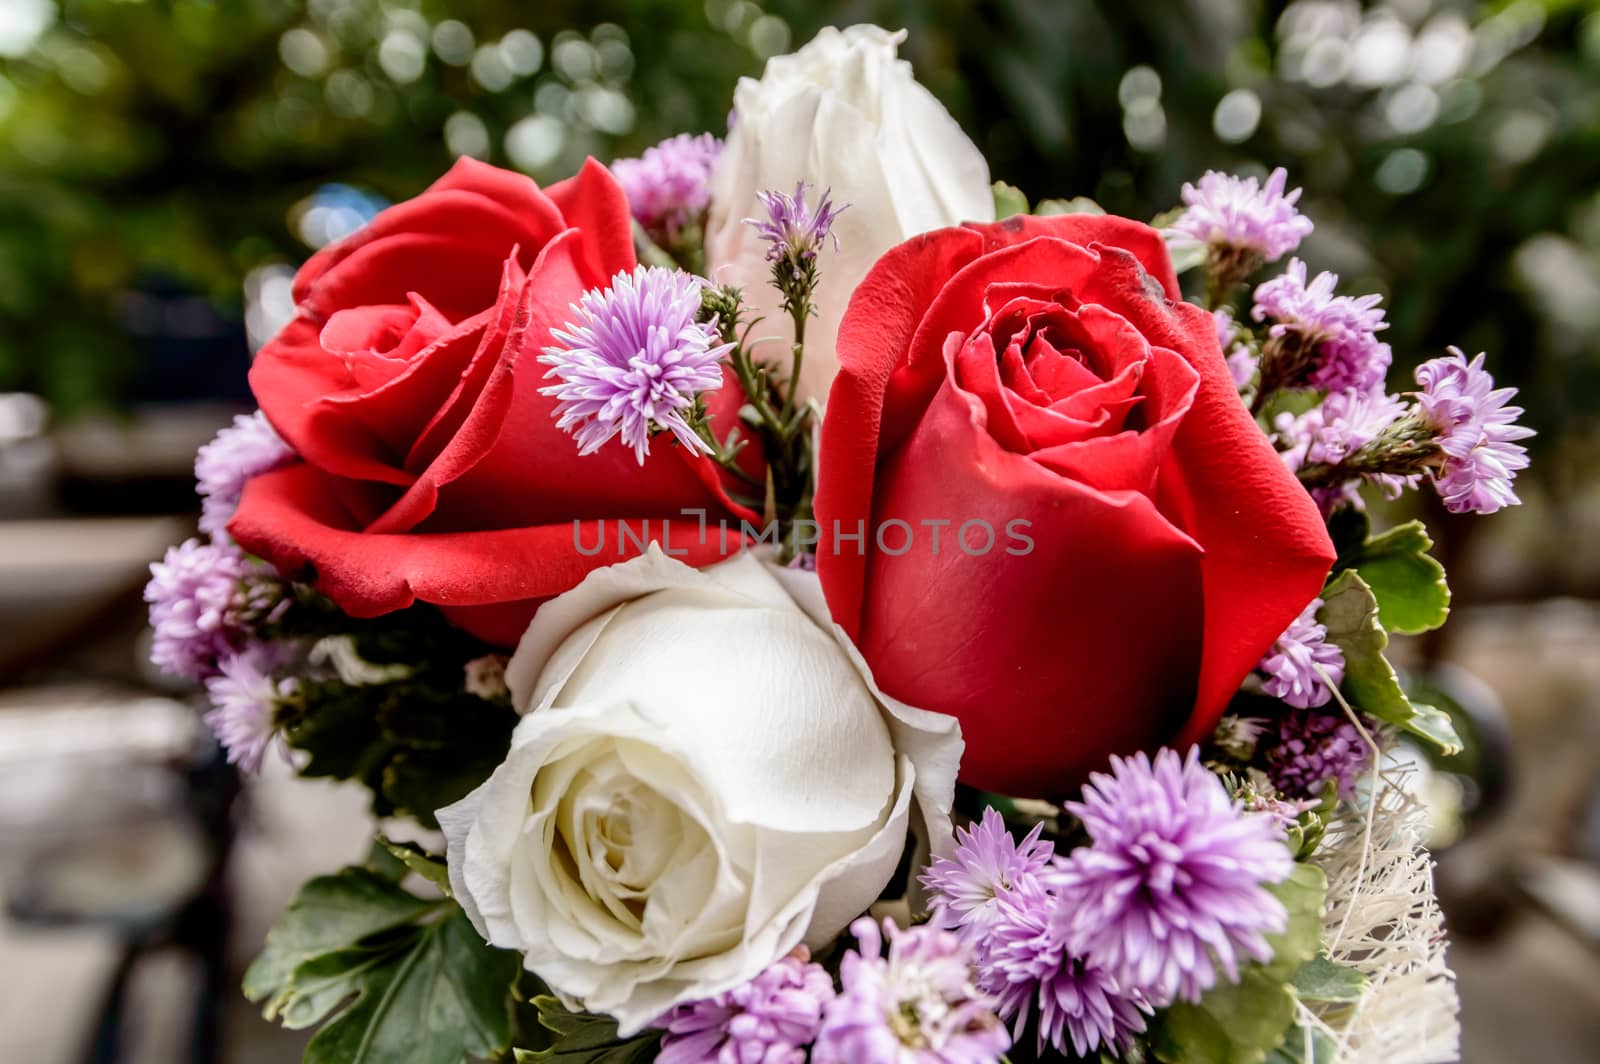 Closeup of a beautiful roses